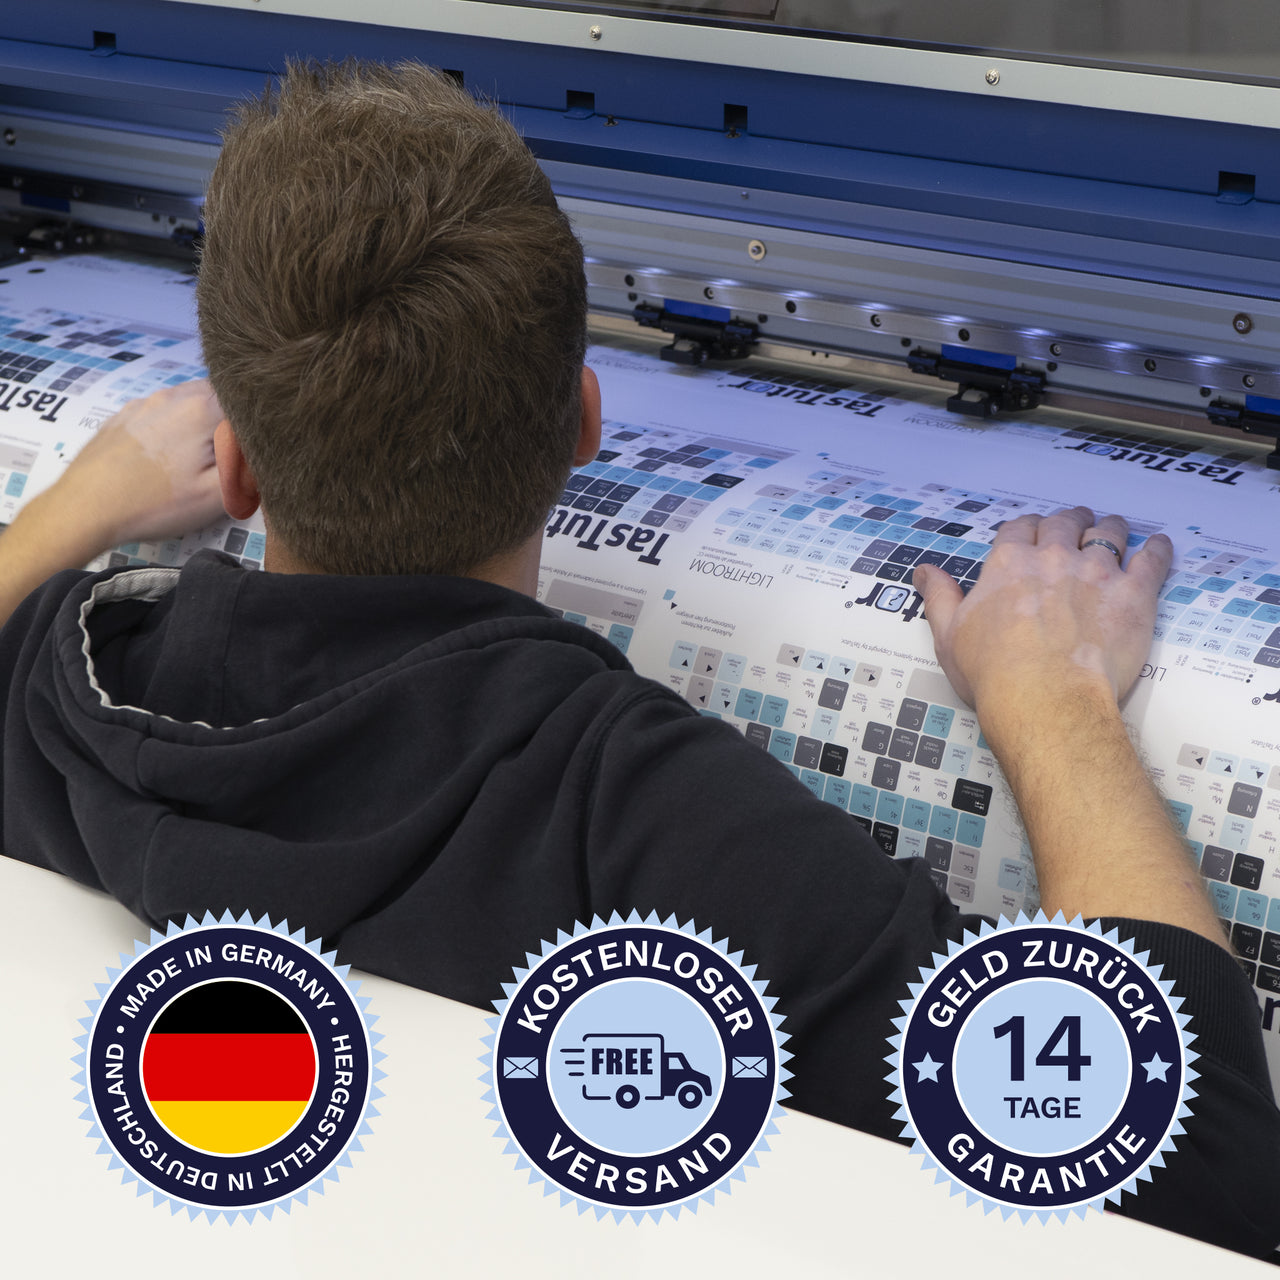 Vegas Pro Tastaturaufkleber werden in Deutschland hergestellt. Der Versand ist kostenlos und wir gewährleisten 14 Tage Geld zurück Garantie.